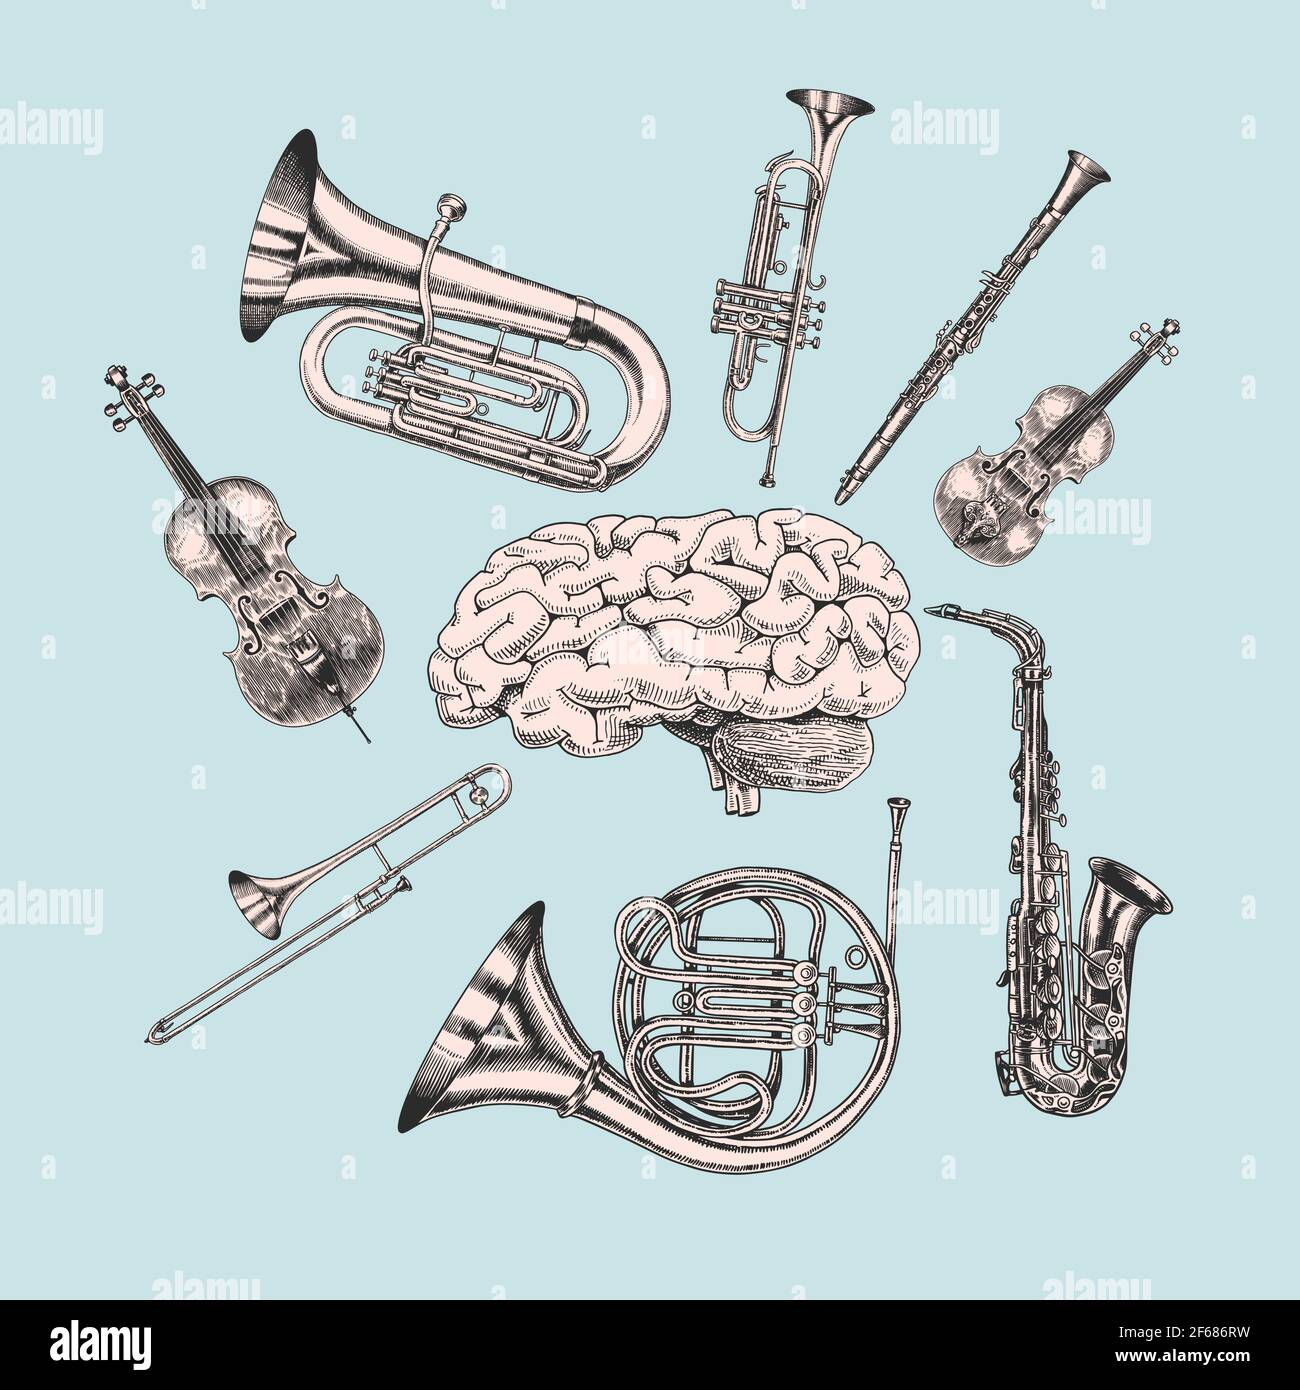 Musique et cerveau dans un style vintage. Jazz musical trombone trompette Flute French Horn saxophone. Croquis dessiné à la main pour tatouage, t-shirt ou coupe de bois Illustration de Vecteur